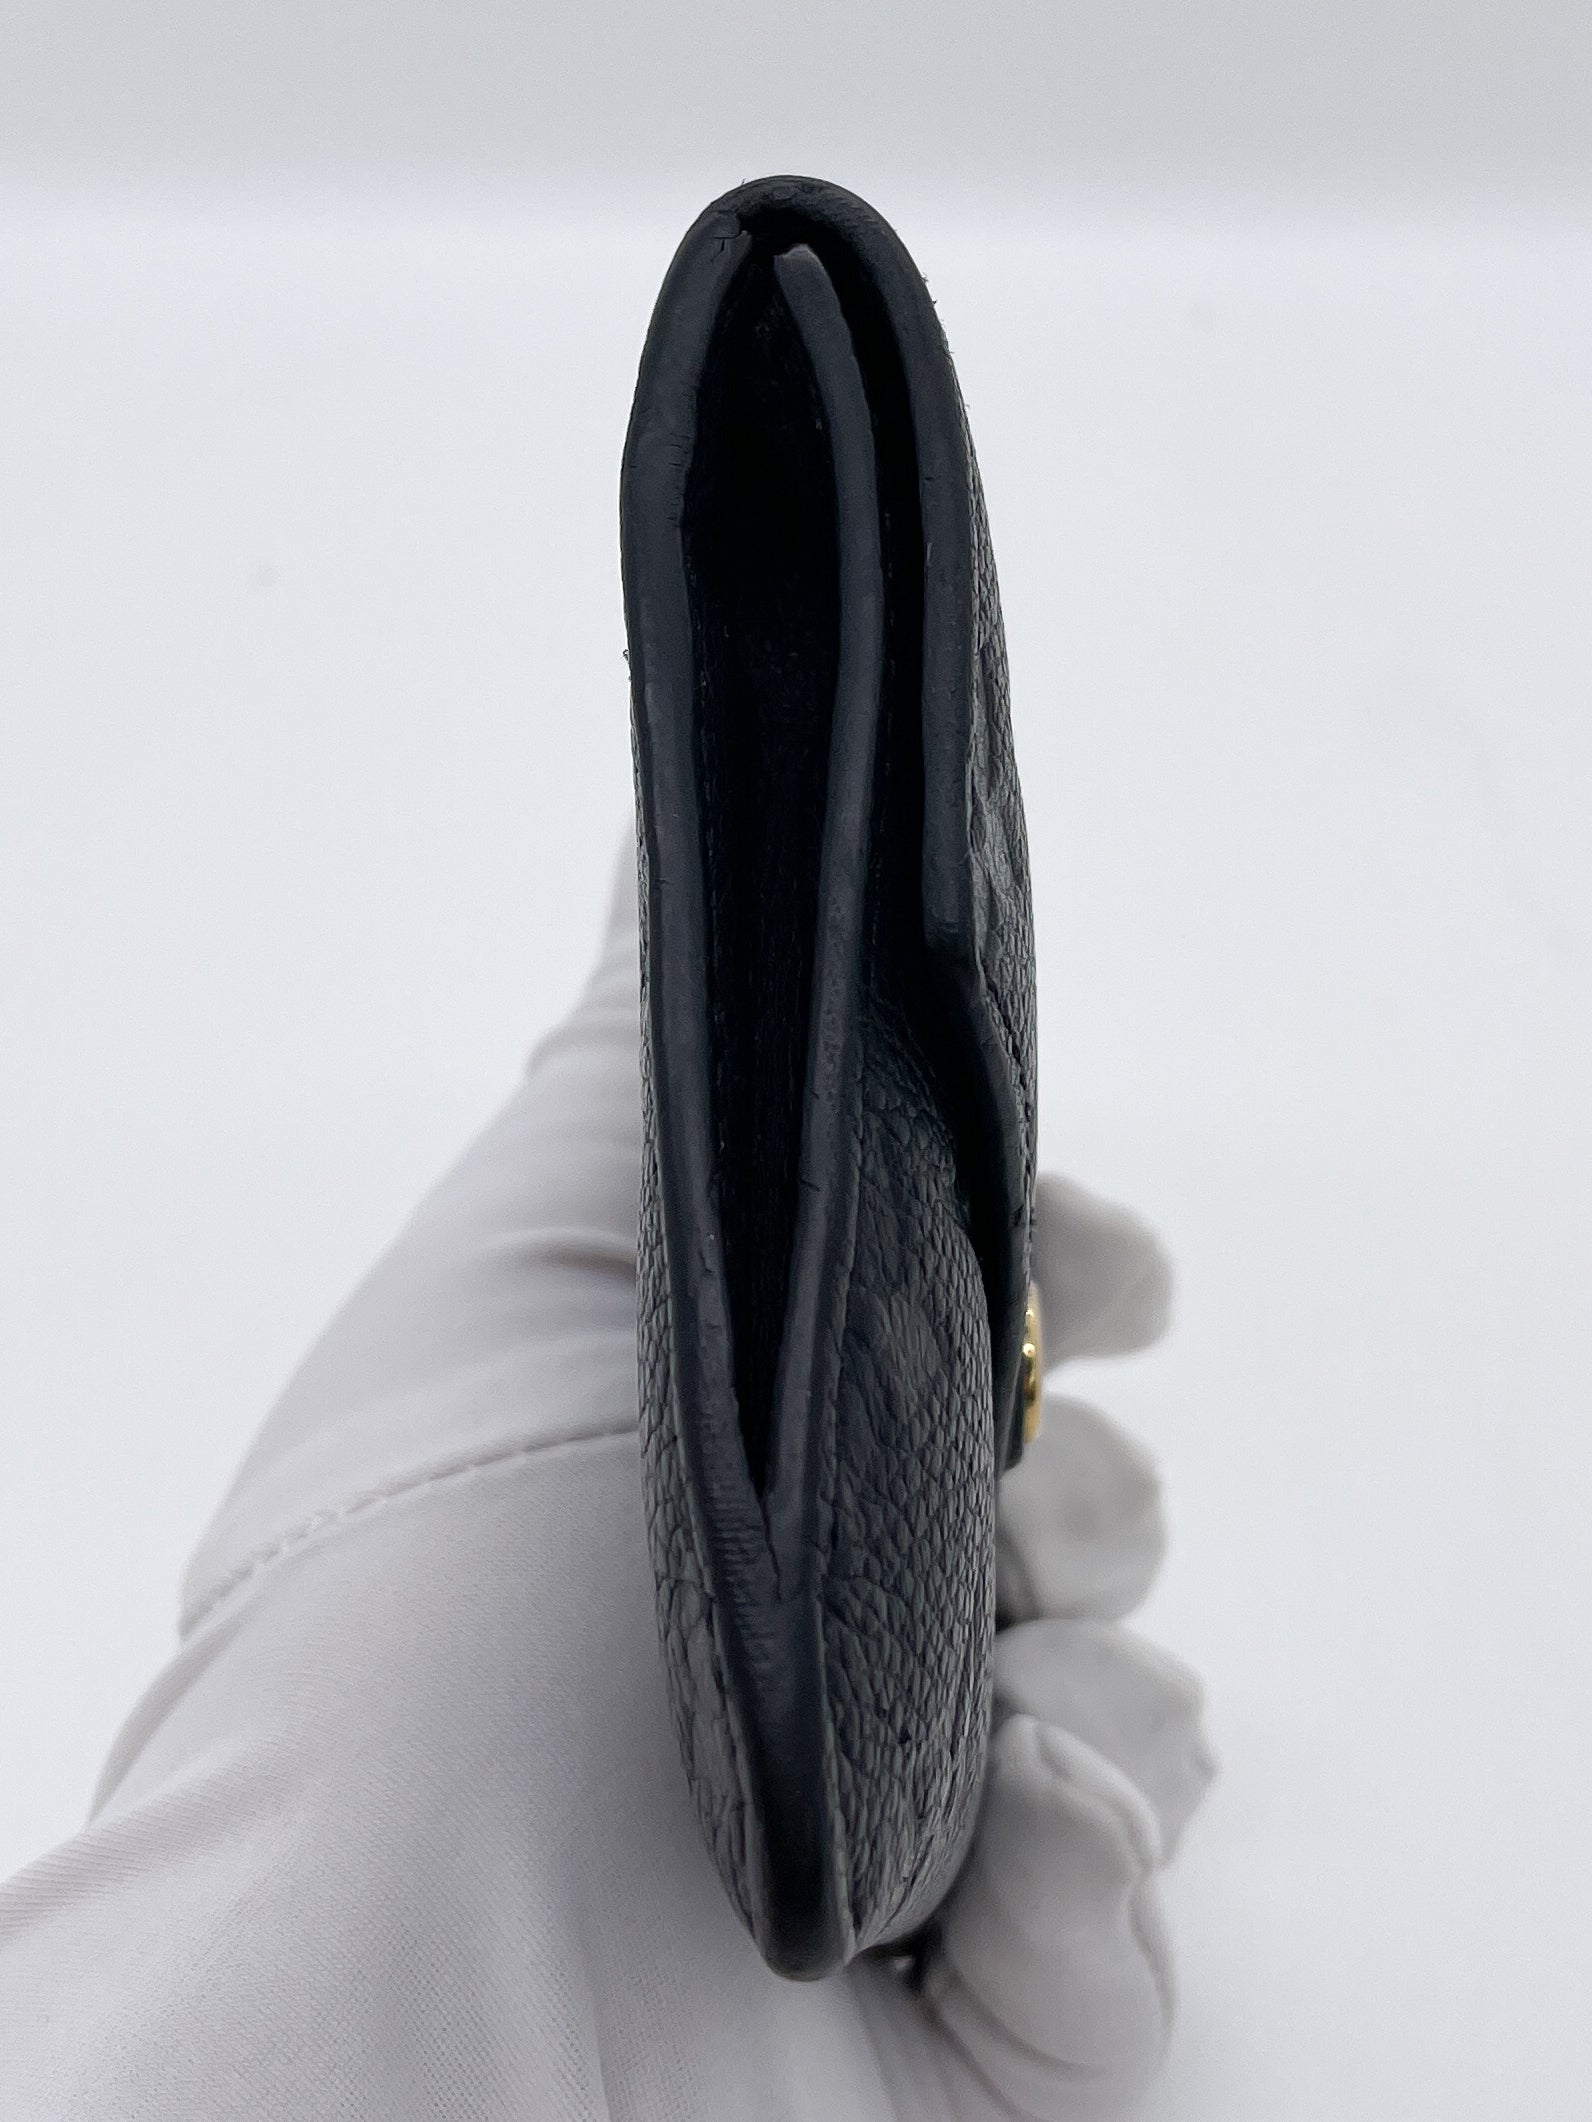 Shop Louis Vuitton MONOGRAM EMPREINTE Key pouch (M62650, N62658) by  nanalyme